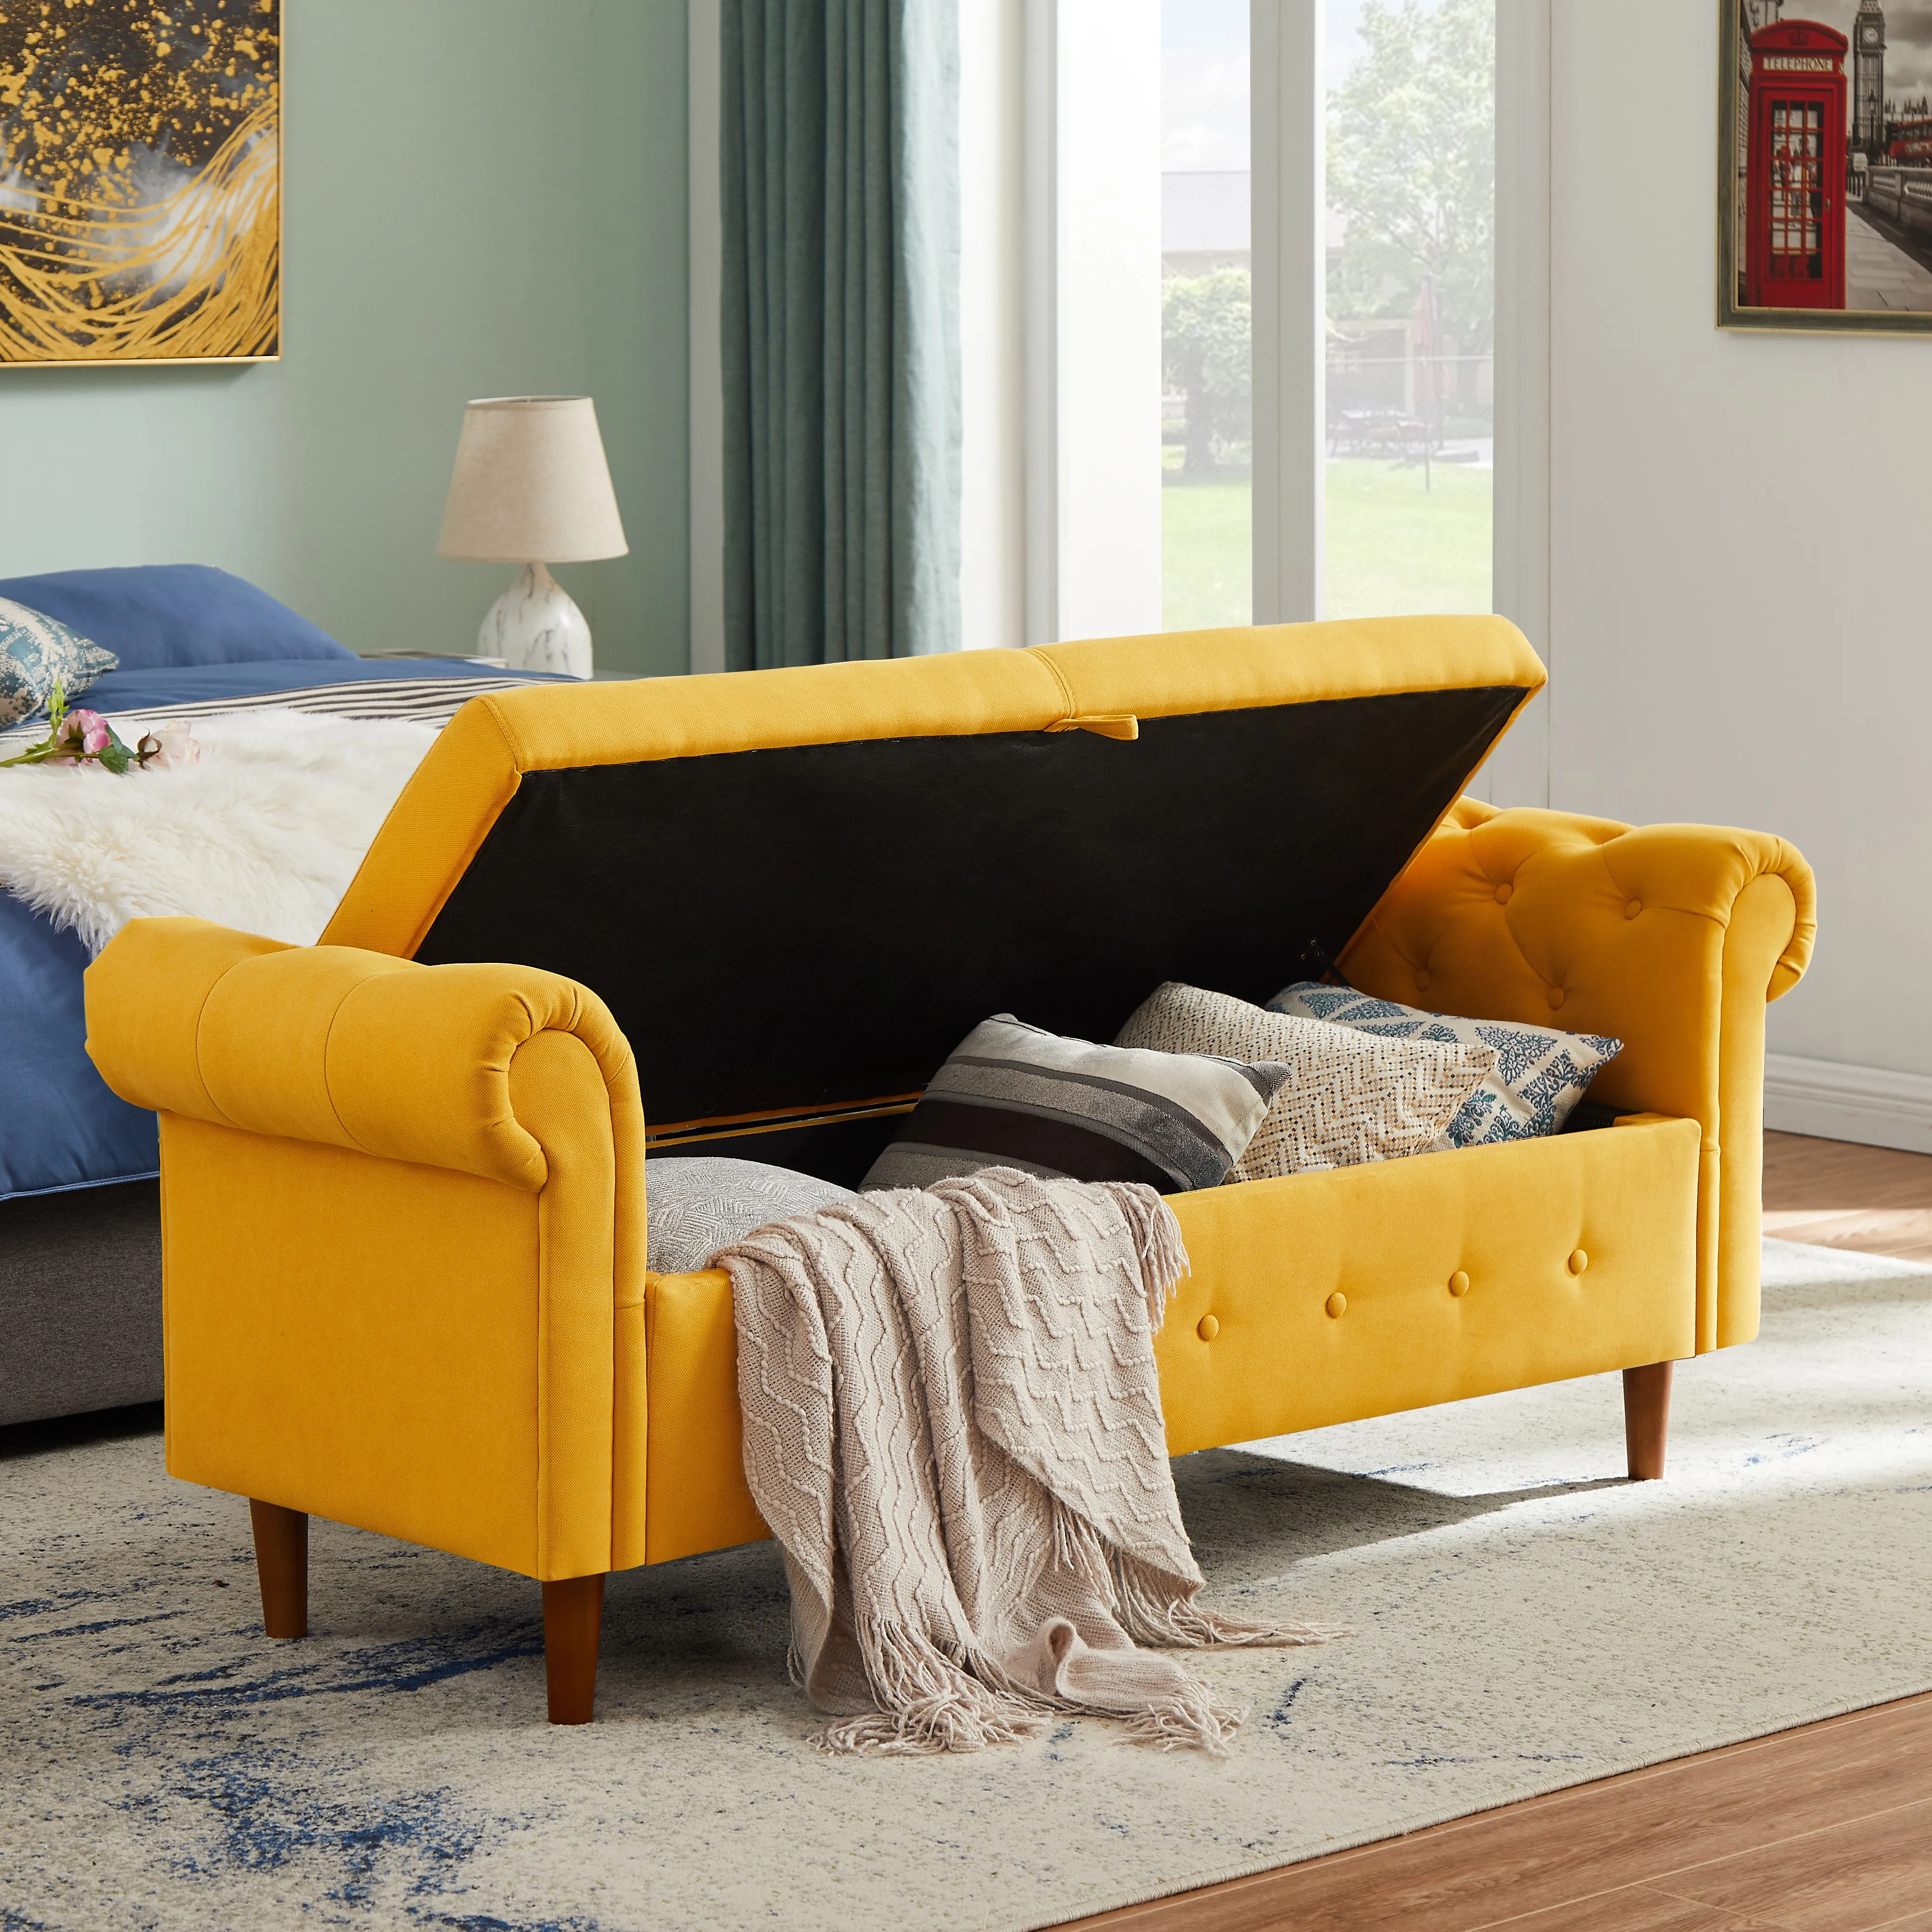 جديد على النمط الجديد توفير مساحة التخزين متعددة الأغراض براز أريكة مستطيلة مع مساحة تخزين كبيرة ، أصفر